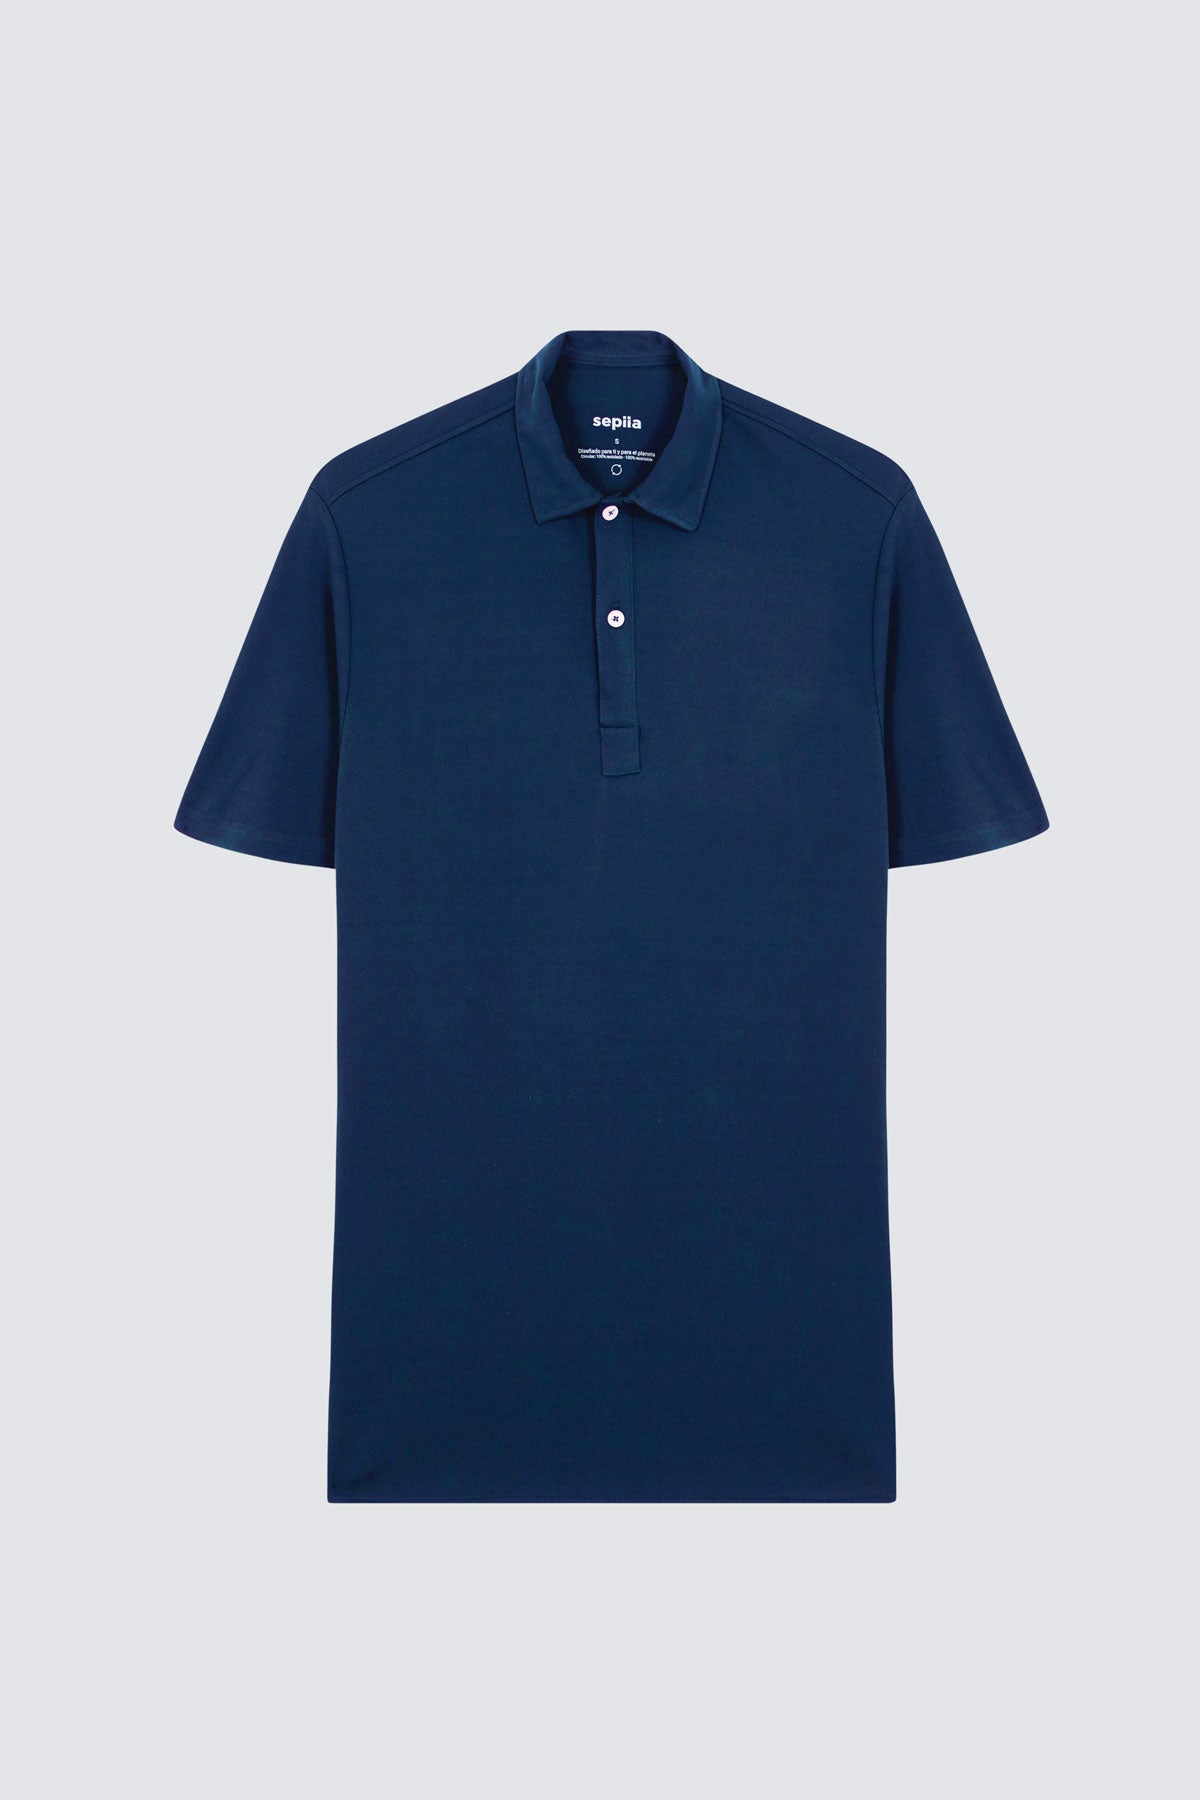 Polo manga corta para hombre en azul marino de Sepiia, versatilidad y elegancia en una prenda clásica. Foto prenda en plano